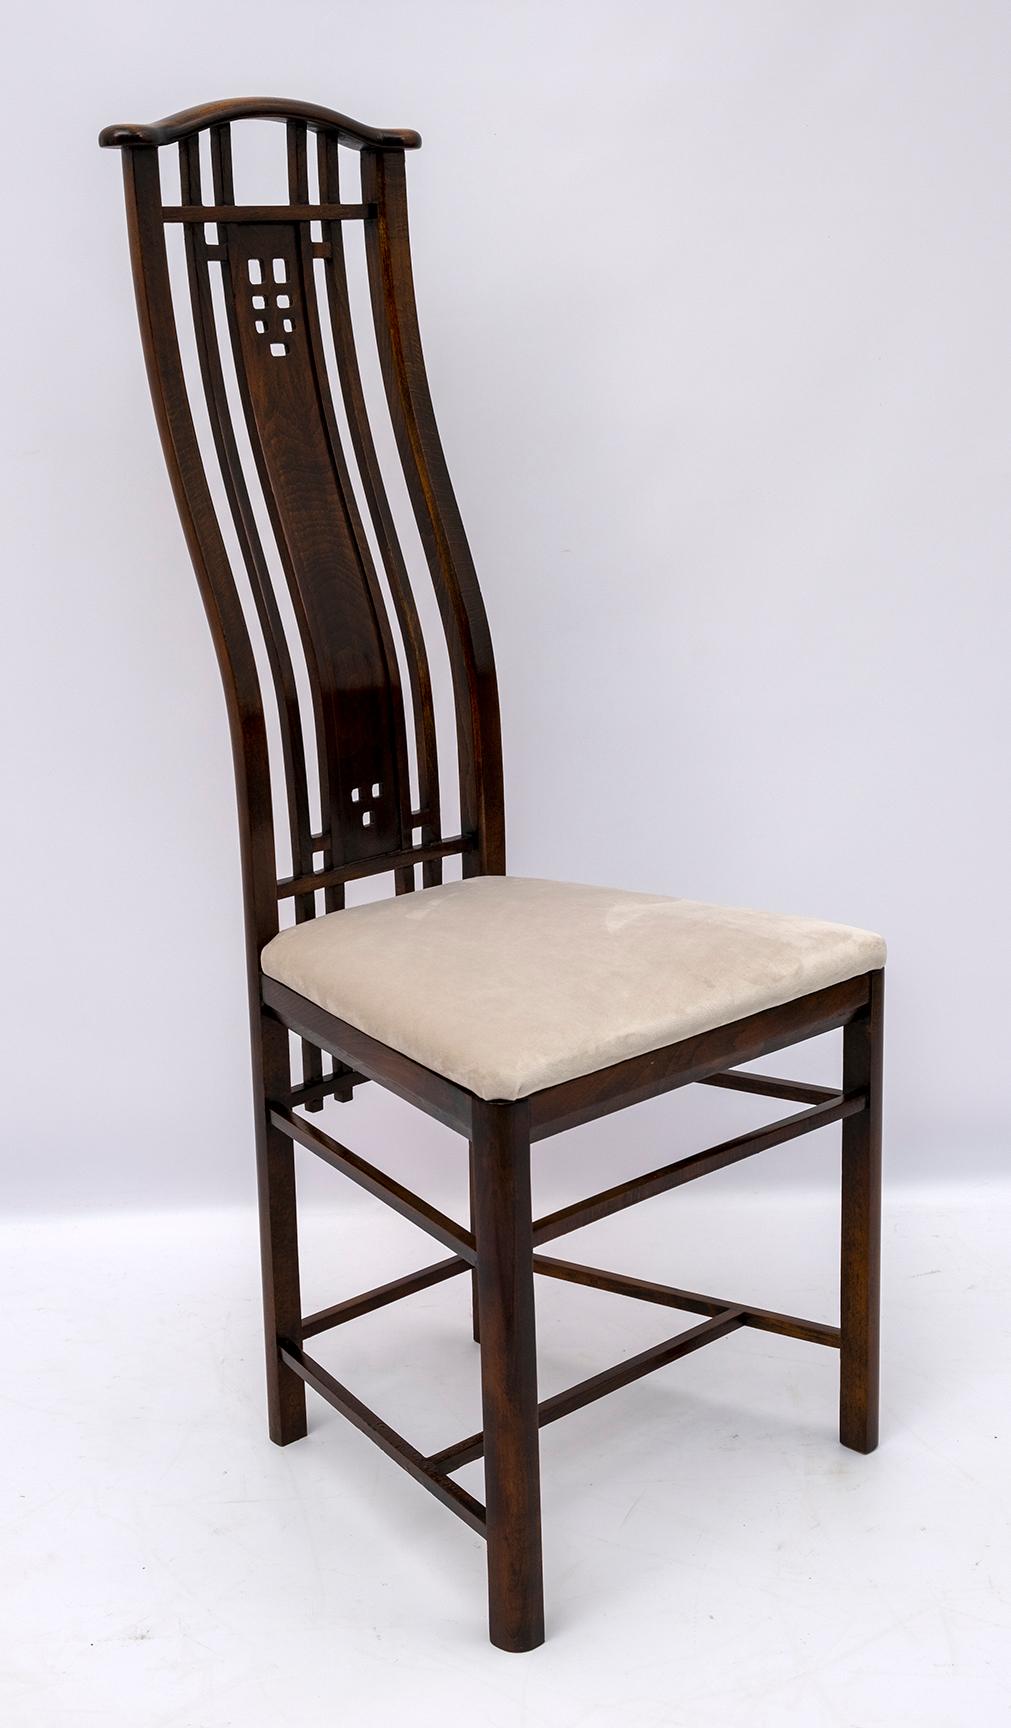 Diese vier Stühle wurden von der berühmten italienischen Firma Giorgetti hergestellt, die vier Stühle sind aus gebeizter Buche, mit einer hohen Rückenlehne, die Polsterung wurde mit elfenbeinfarbenem Samt neu bezogen. Das Set wurde mit Schellack